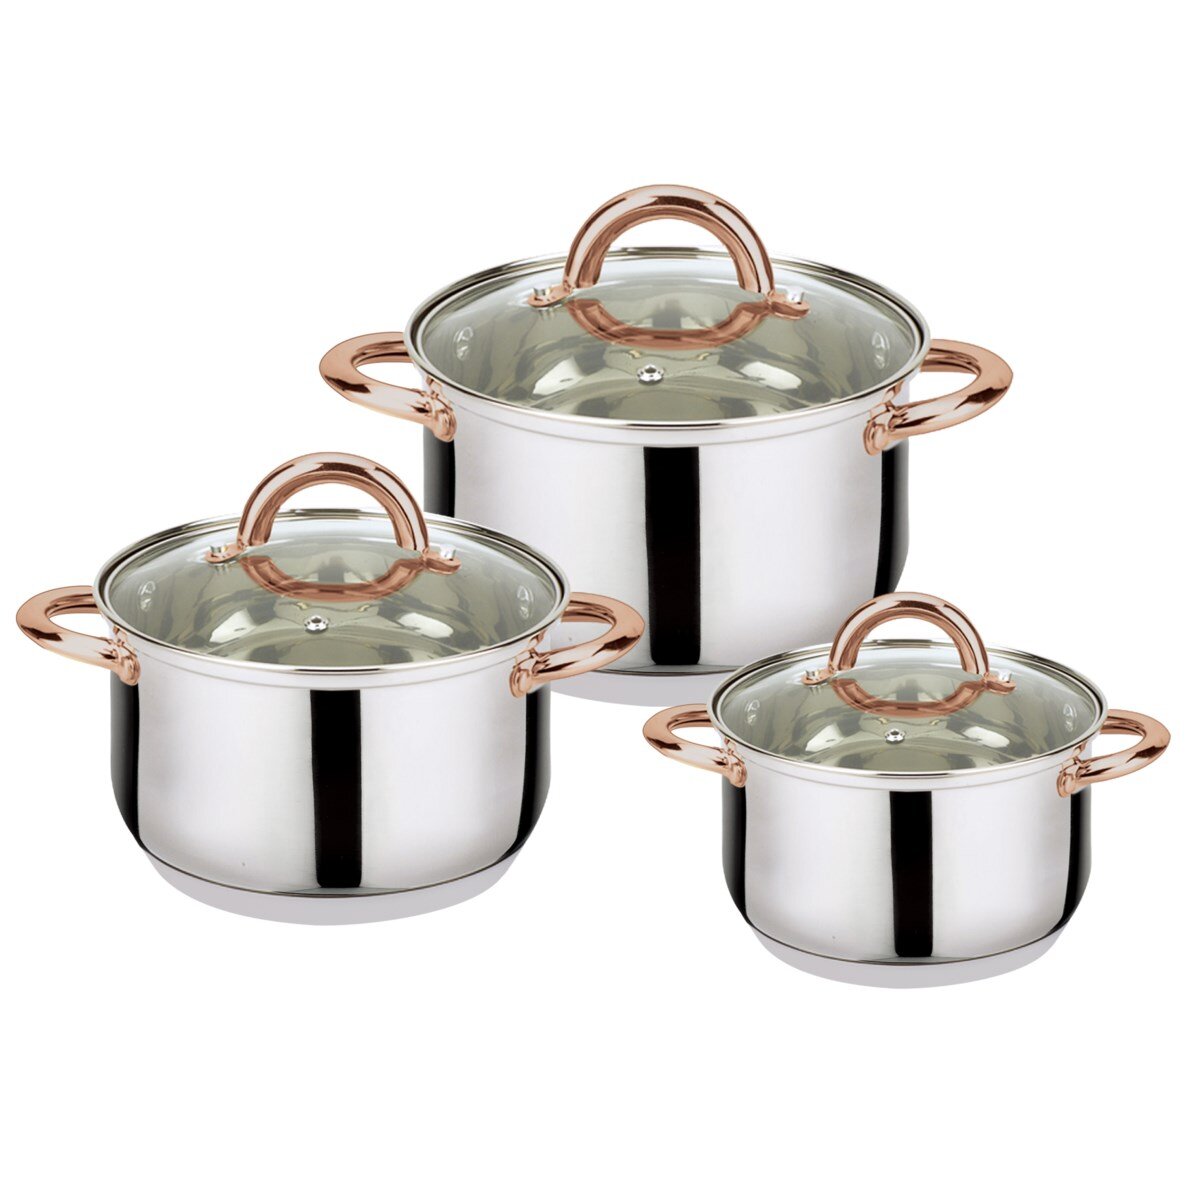 https://assets.wfcdn.com/im/06613133/compr-r85/1382/138262281/6-piece-non-stick-stainless-steel-cookware-set.jpg